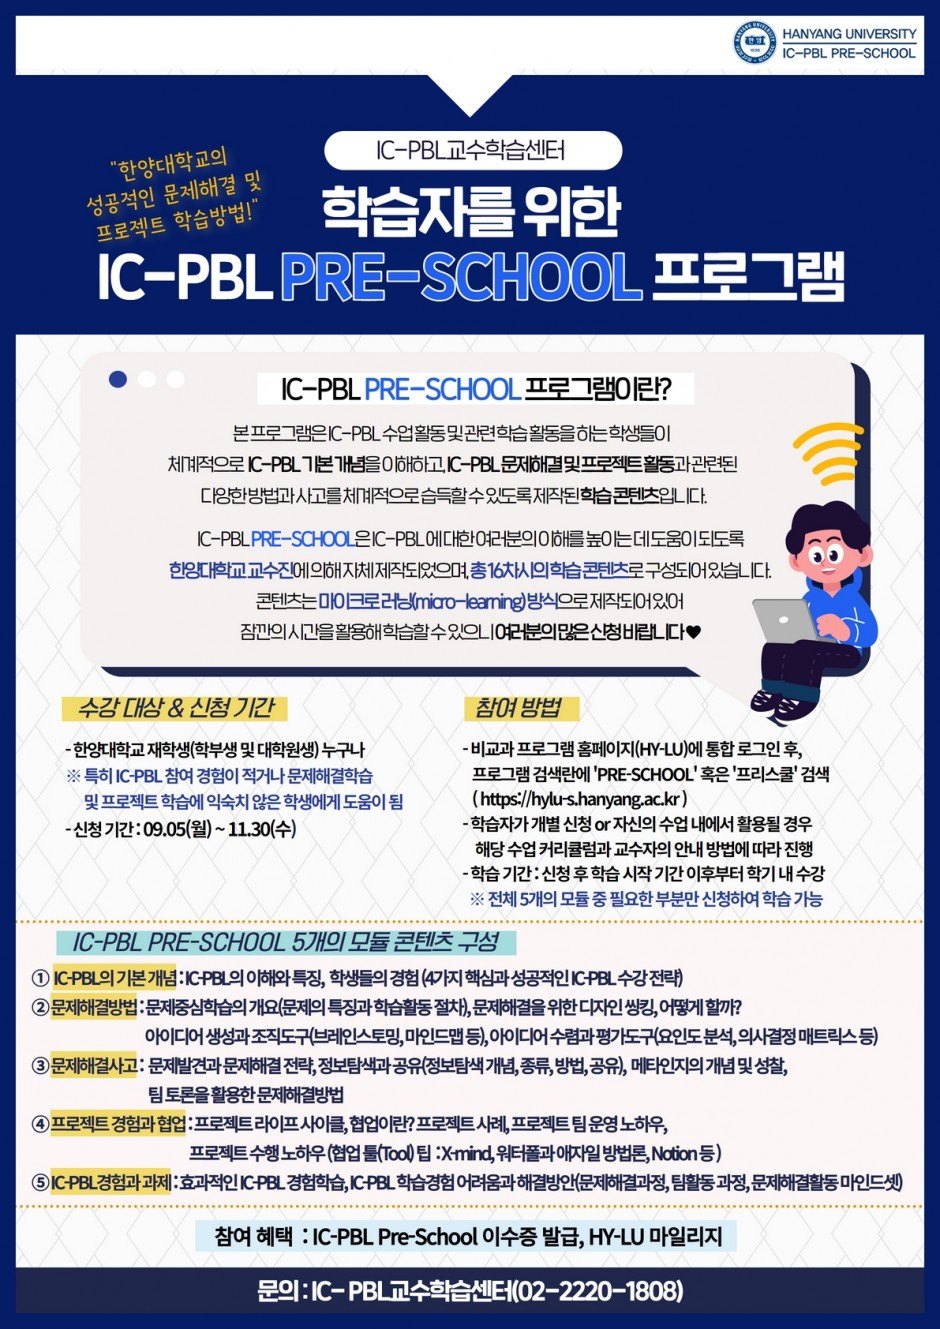 2. 2022-2학기 IC-PBL PRE-SCHOOL 포스터(학생 신청 안내)